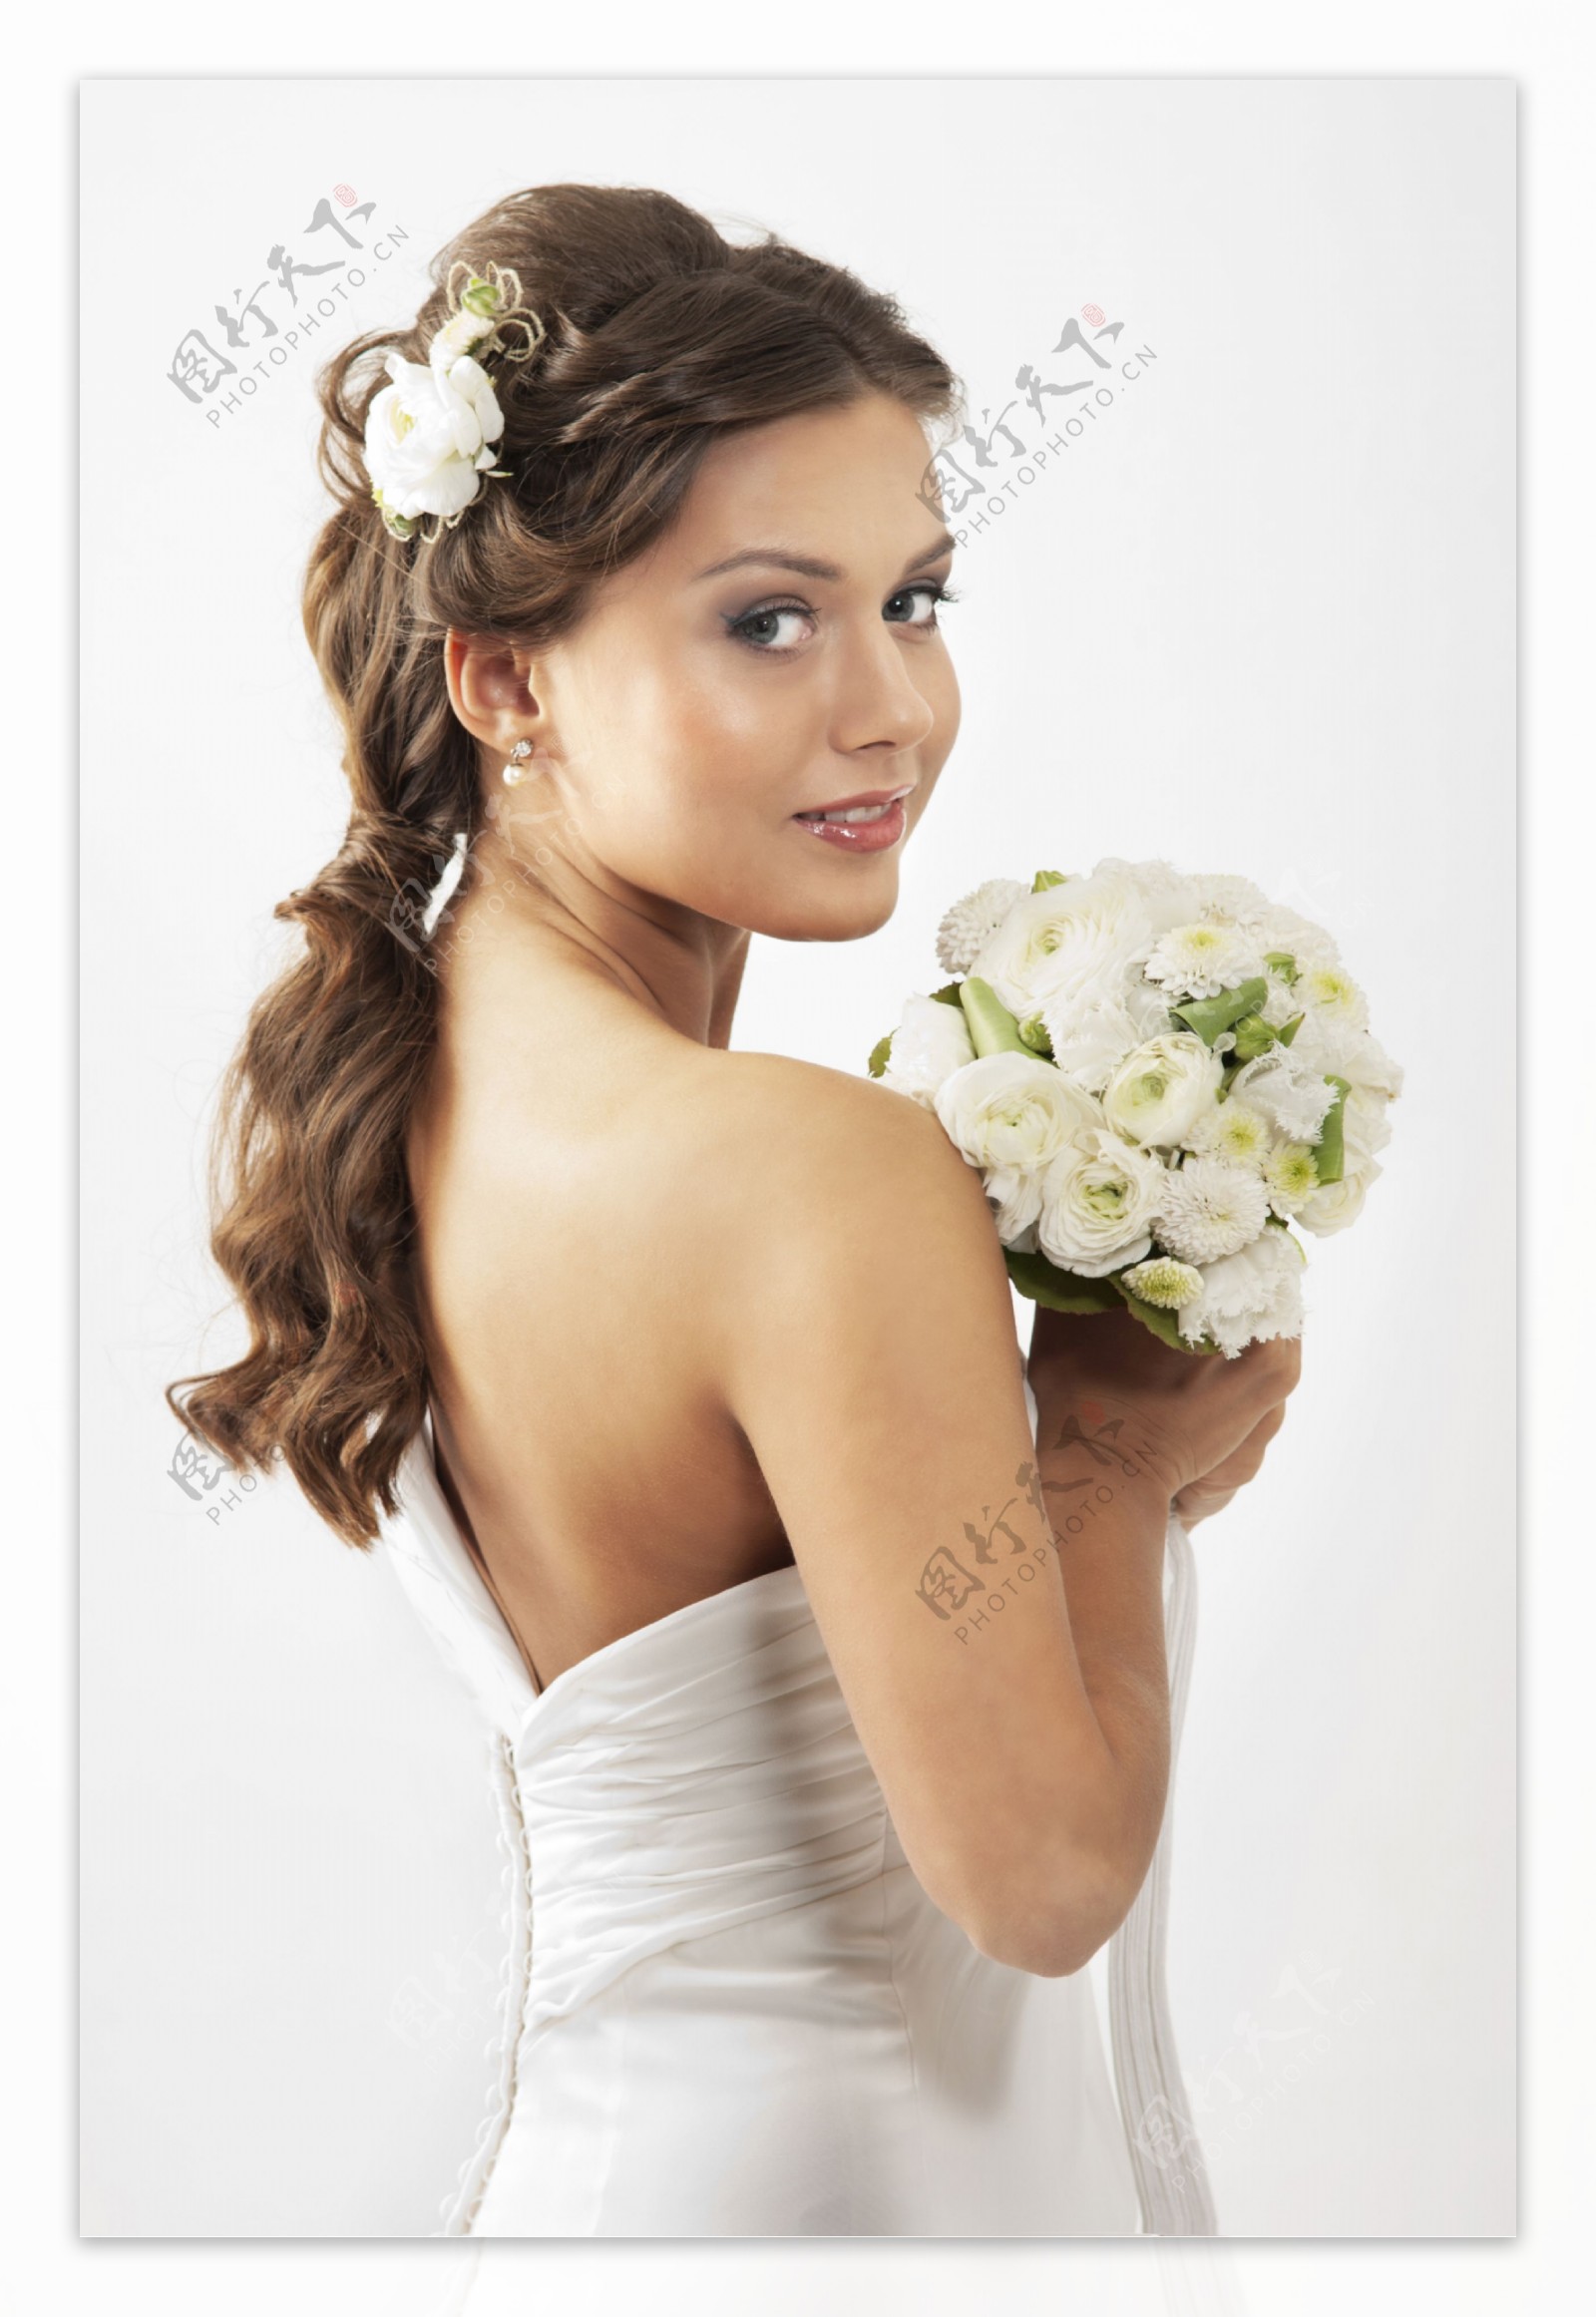 拿花束的新娘图片